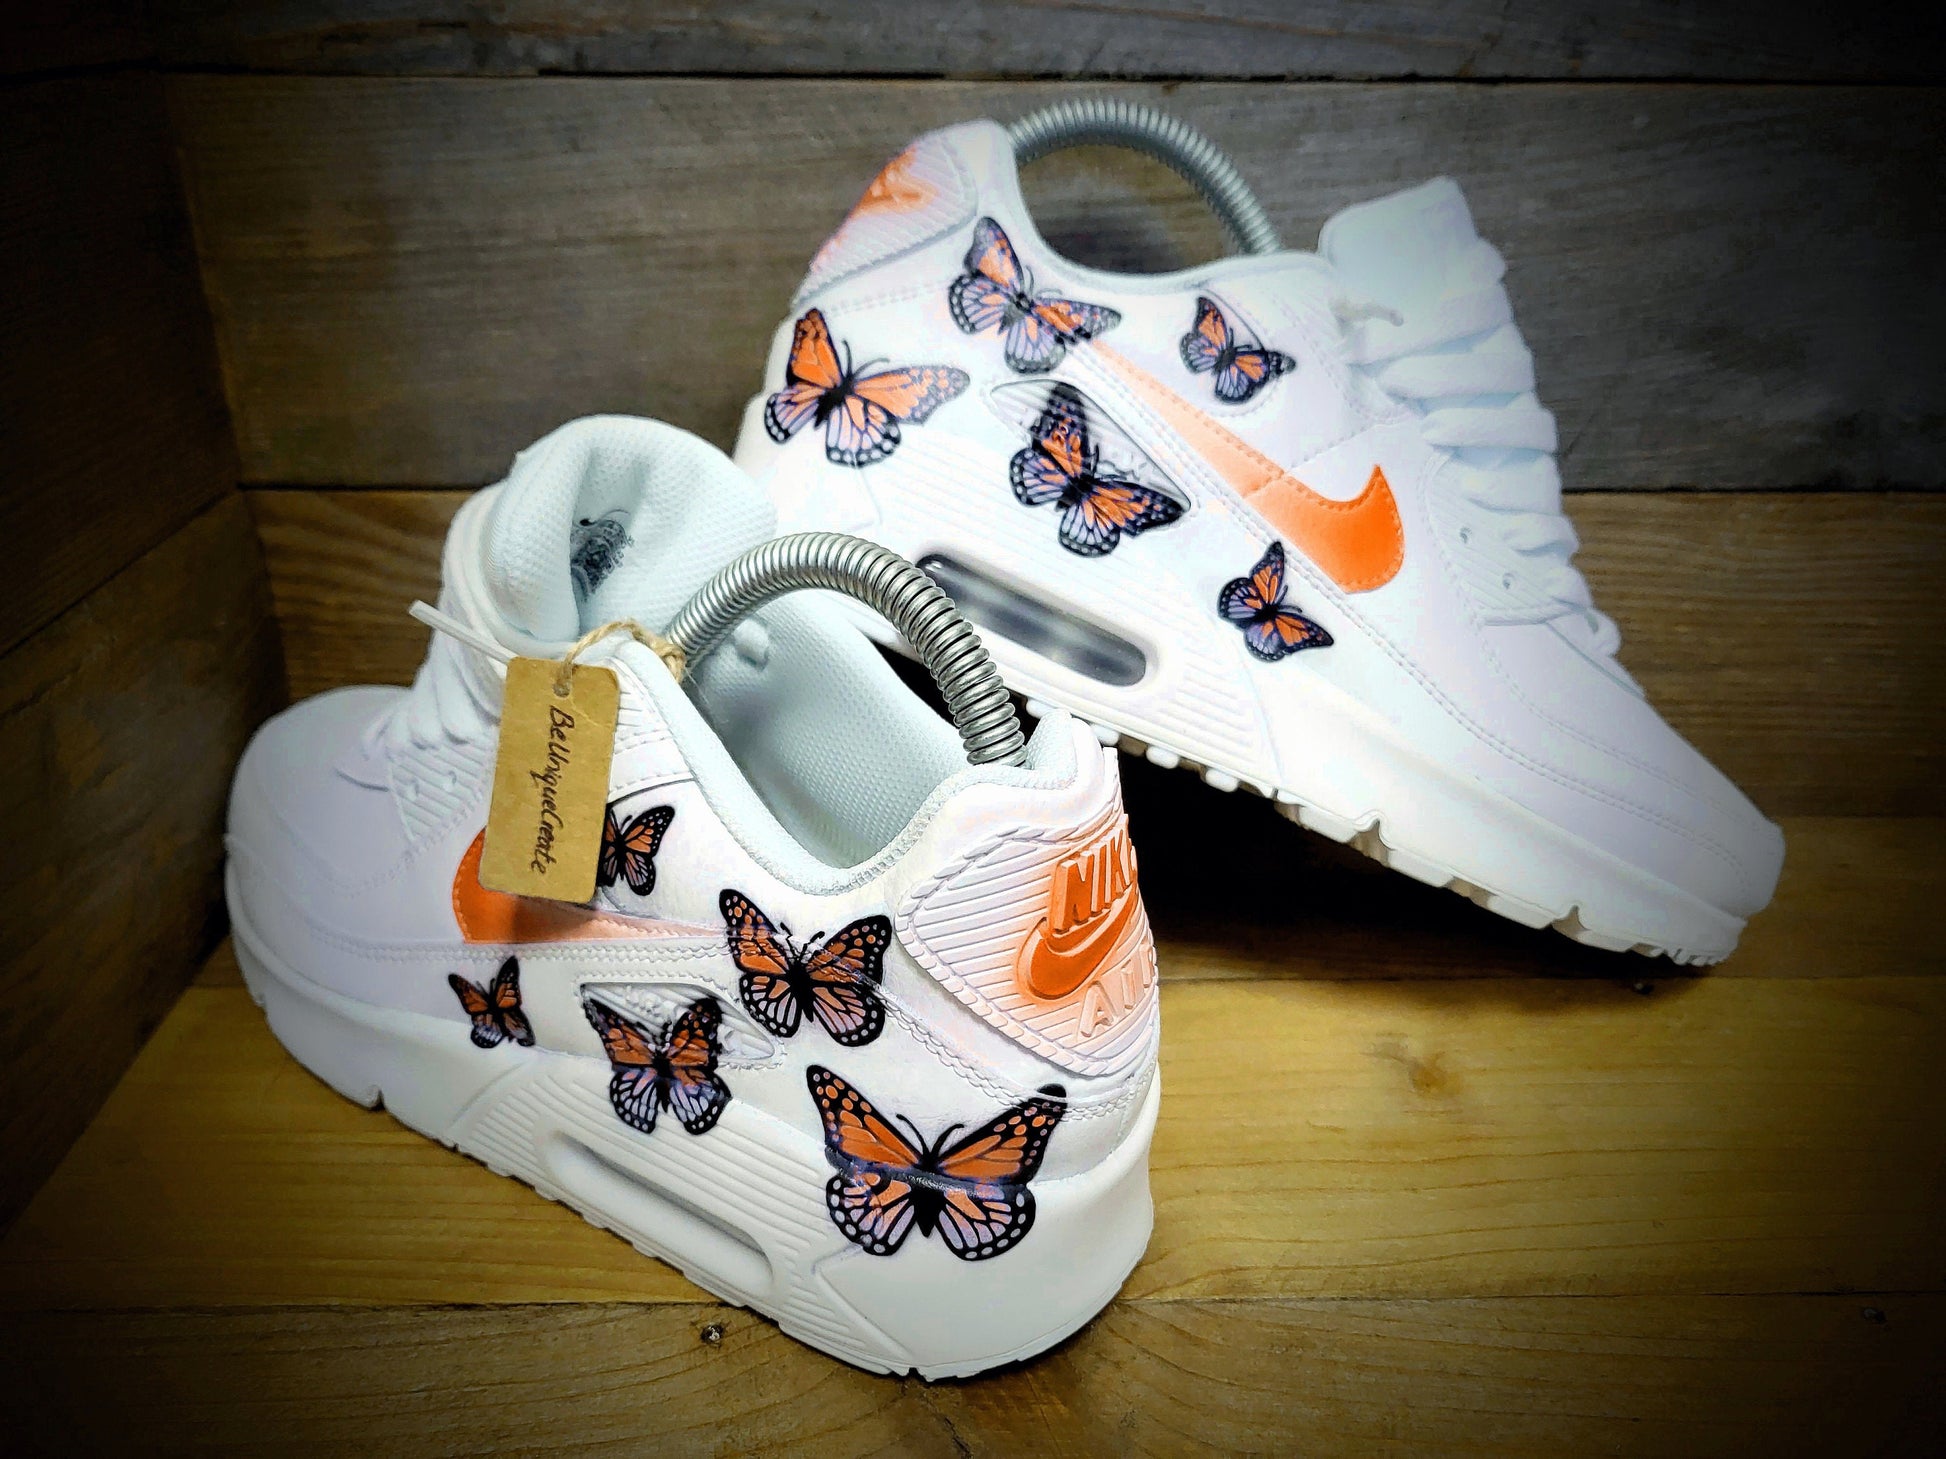 Custom Painted Air Max 90/Sneakers/Shoes/Kicks/Premium/Personalised/Orange Butterfly